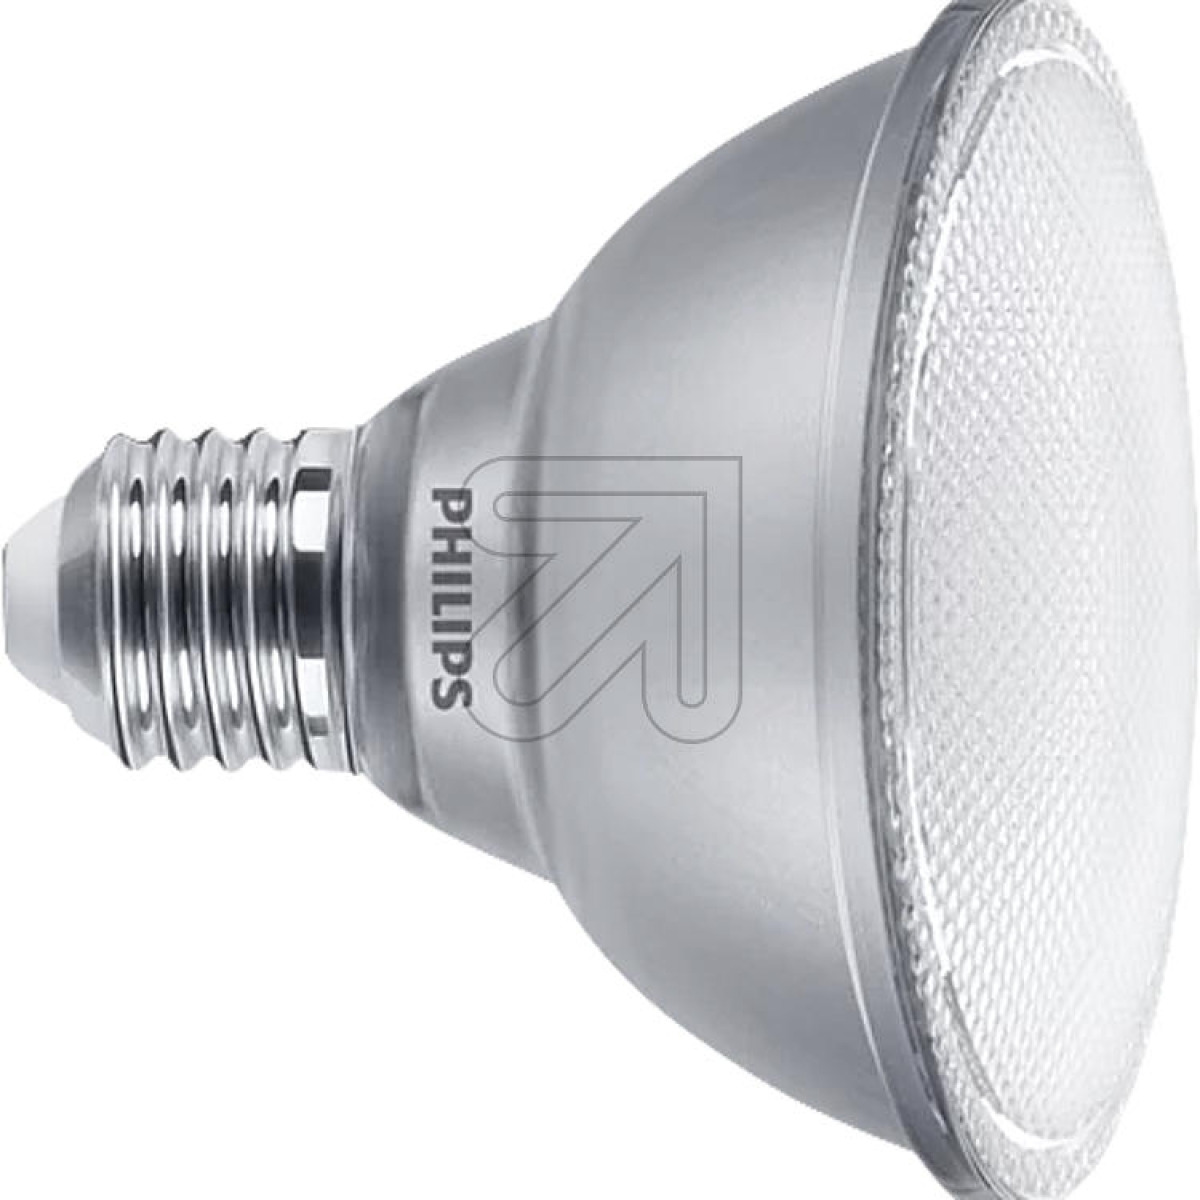 PhilipsMAS LEDspot VLE D 9.5-75W 930 PAR30S 25D 44322800Artikel-Nr: 534955